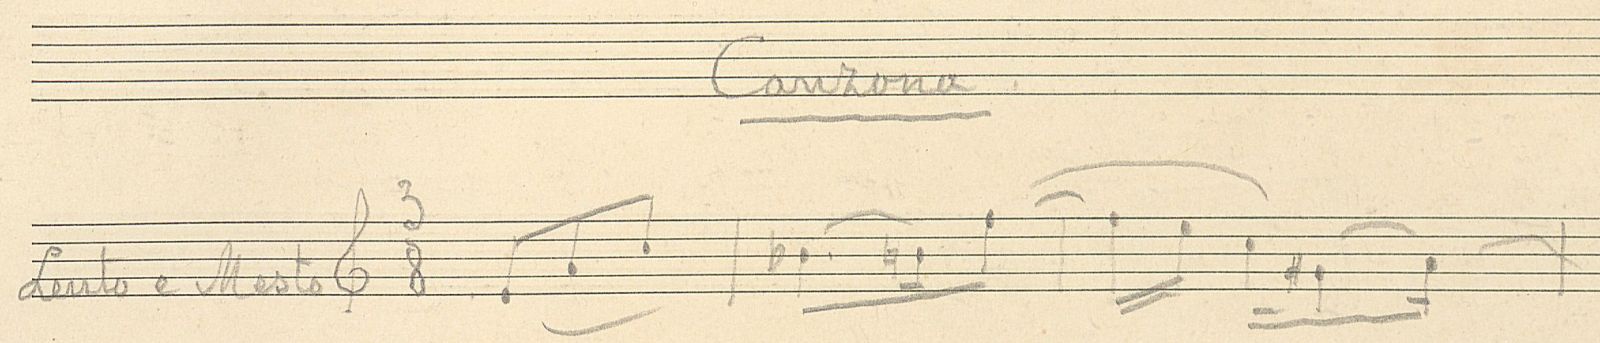 De eerste maten van de tweede beweging van de zevende vioolsonate.